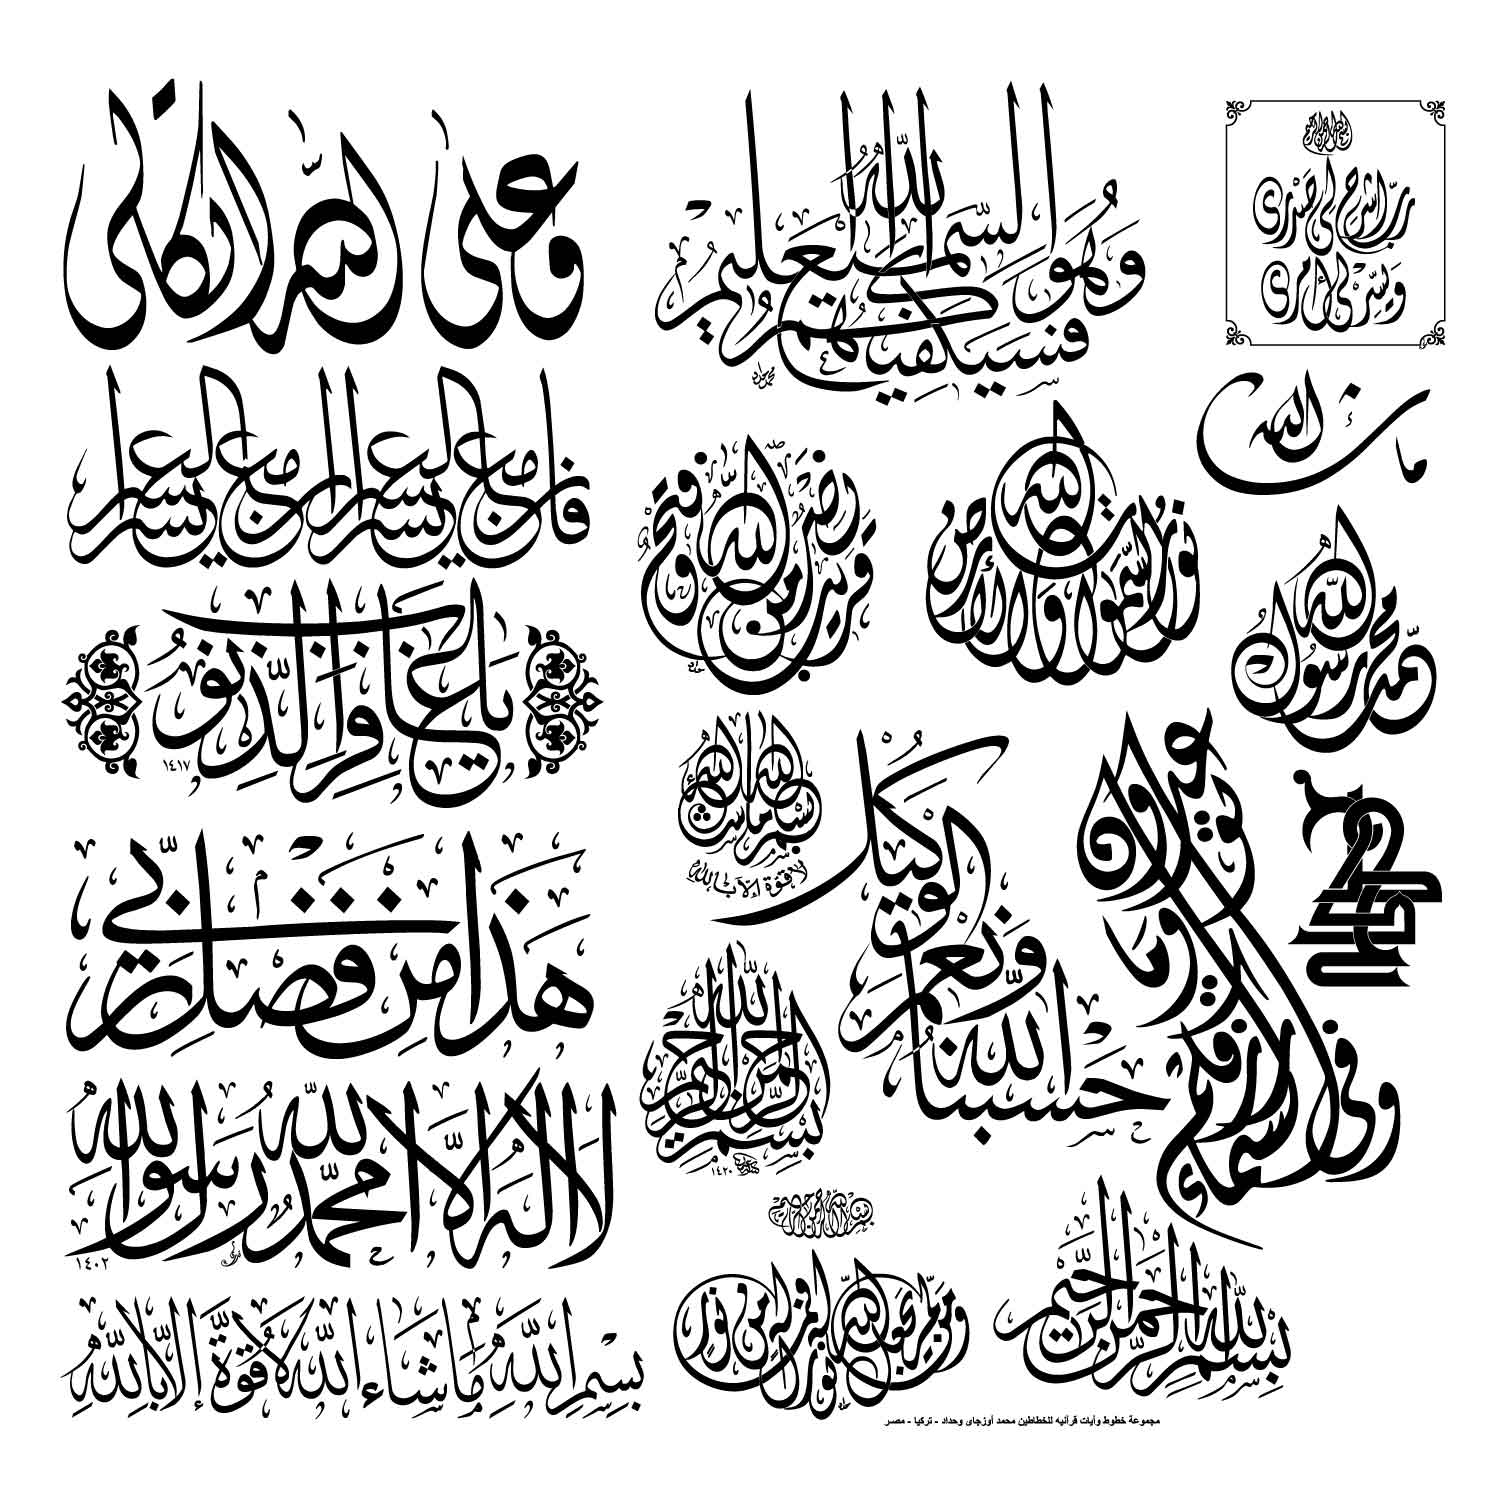 مخطوطات اسلامية مميزة وبصيغة كوريل درو 081710150830l9y952215xzl4j